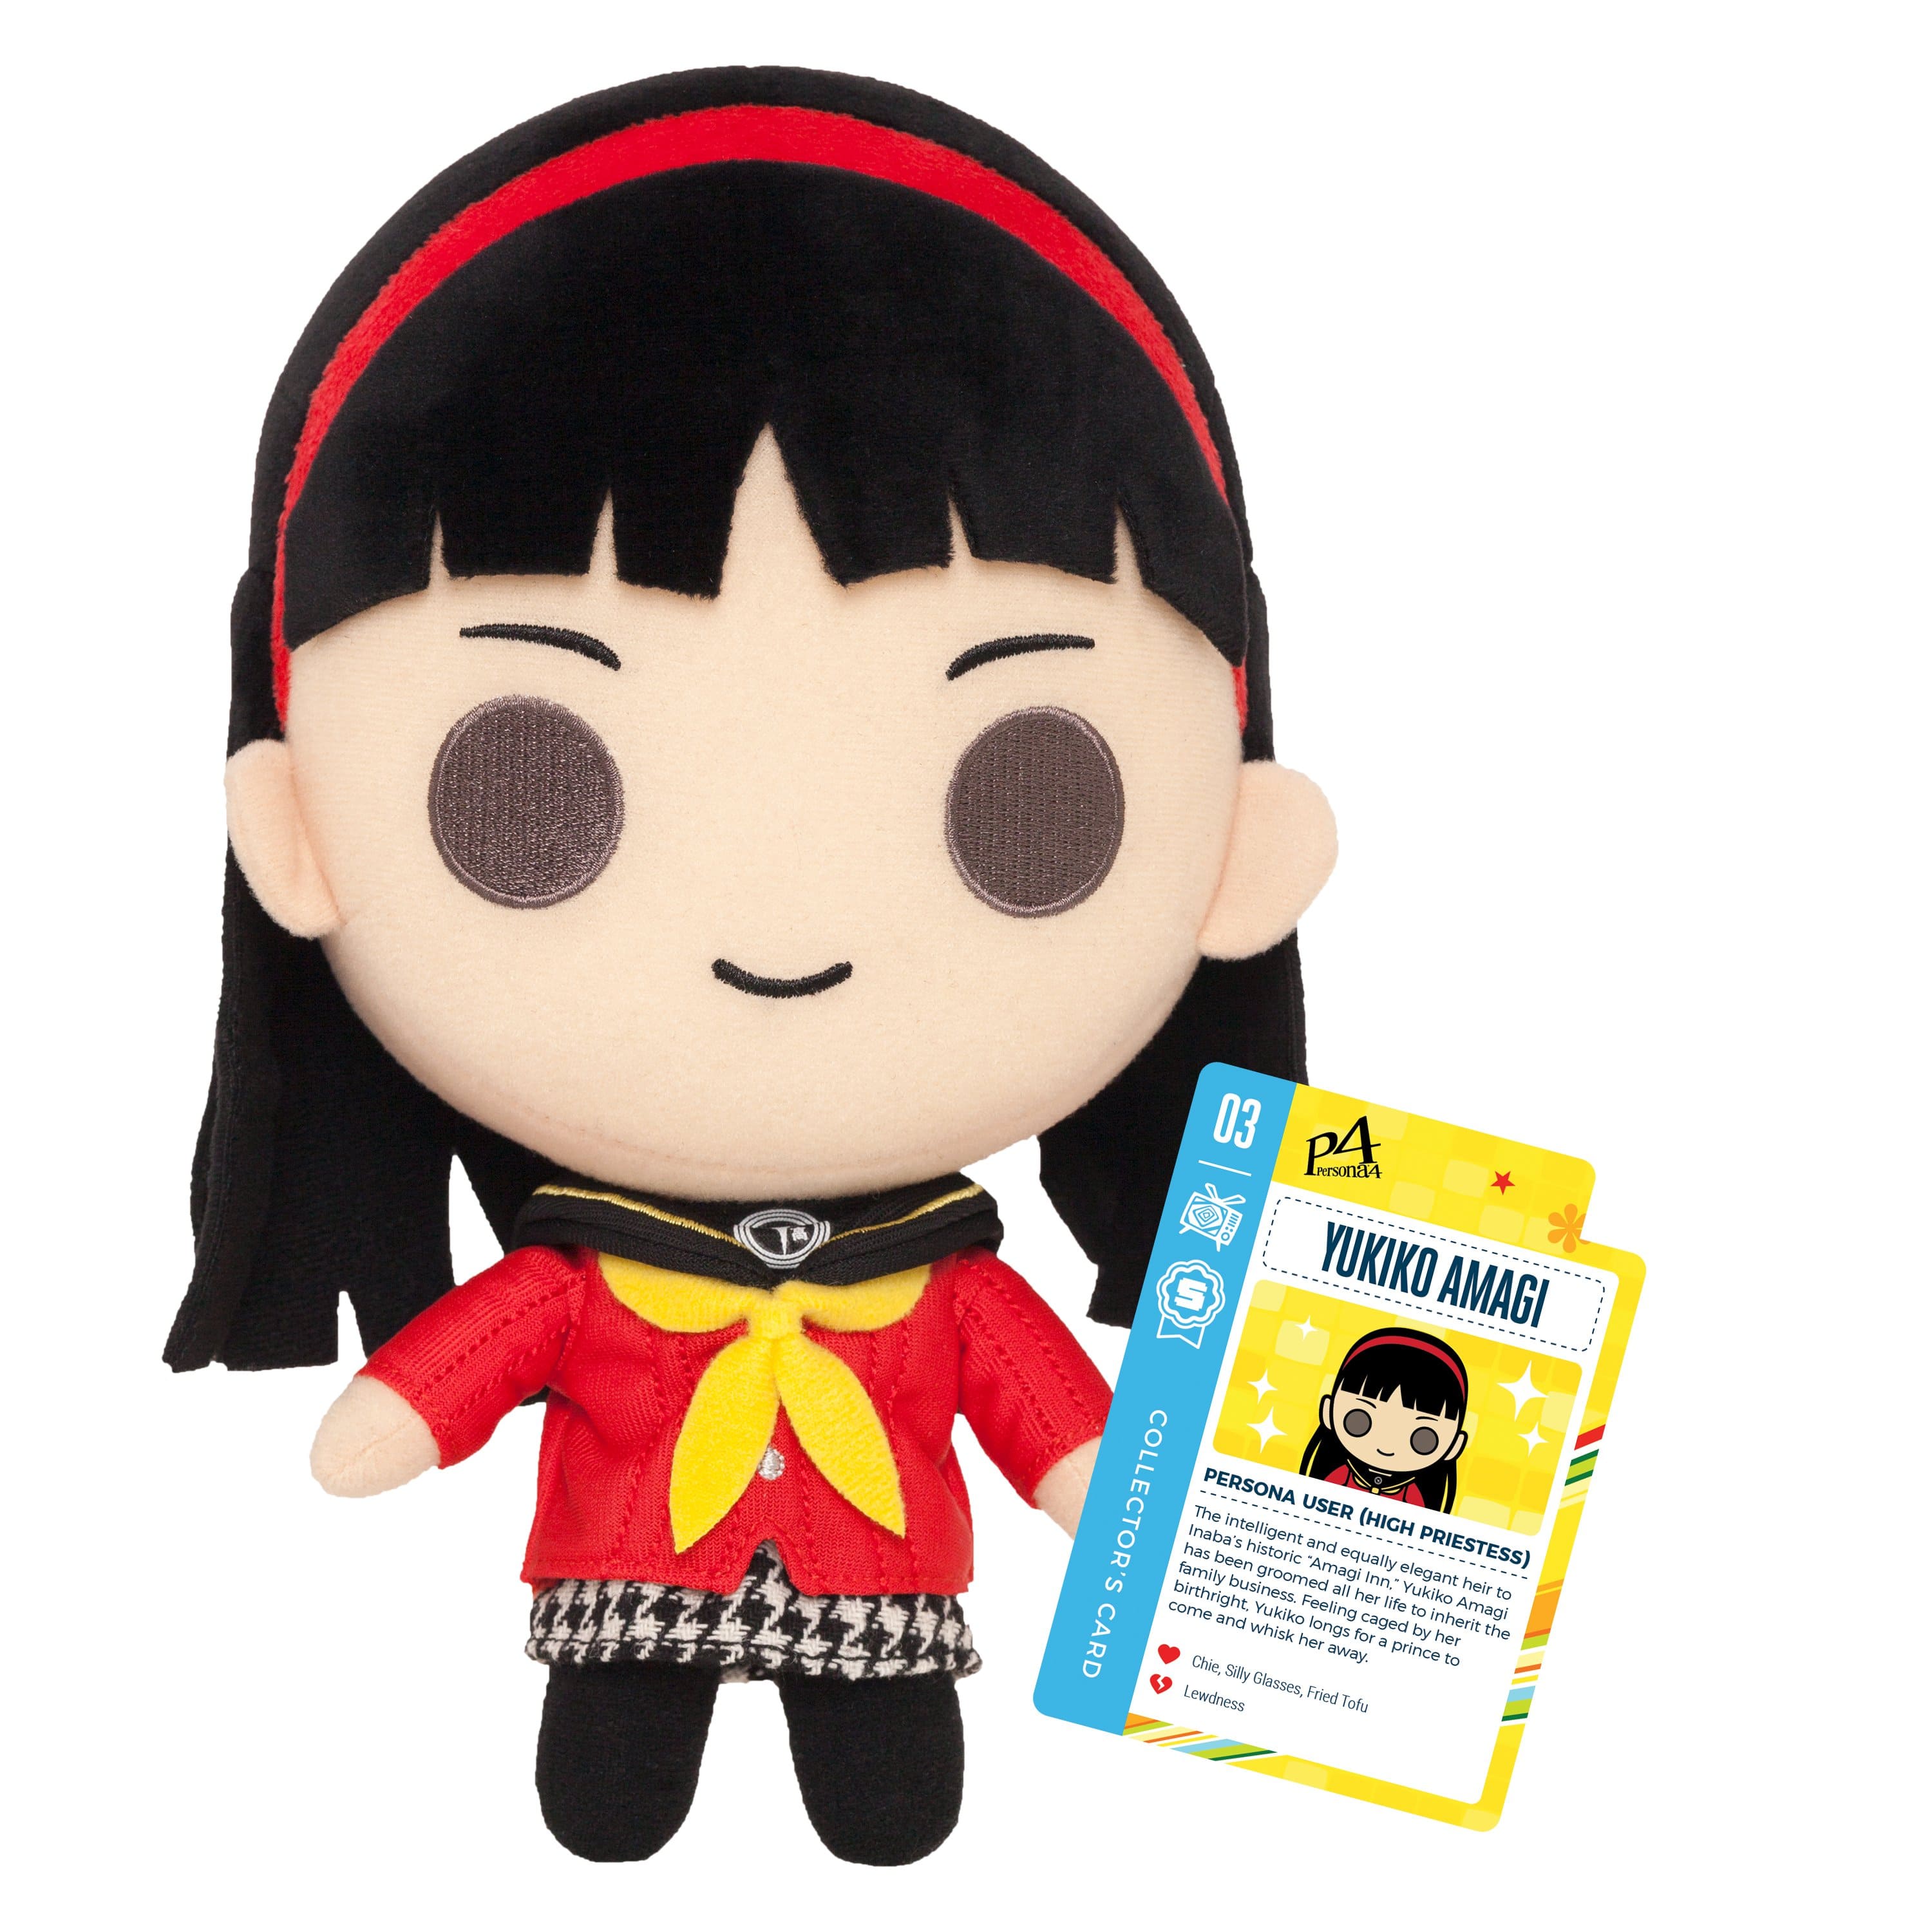 Persona 4 - 10" Yukiko Amagi Collector's Stuffed Plush With Collector's Card